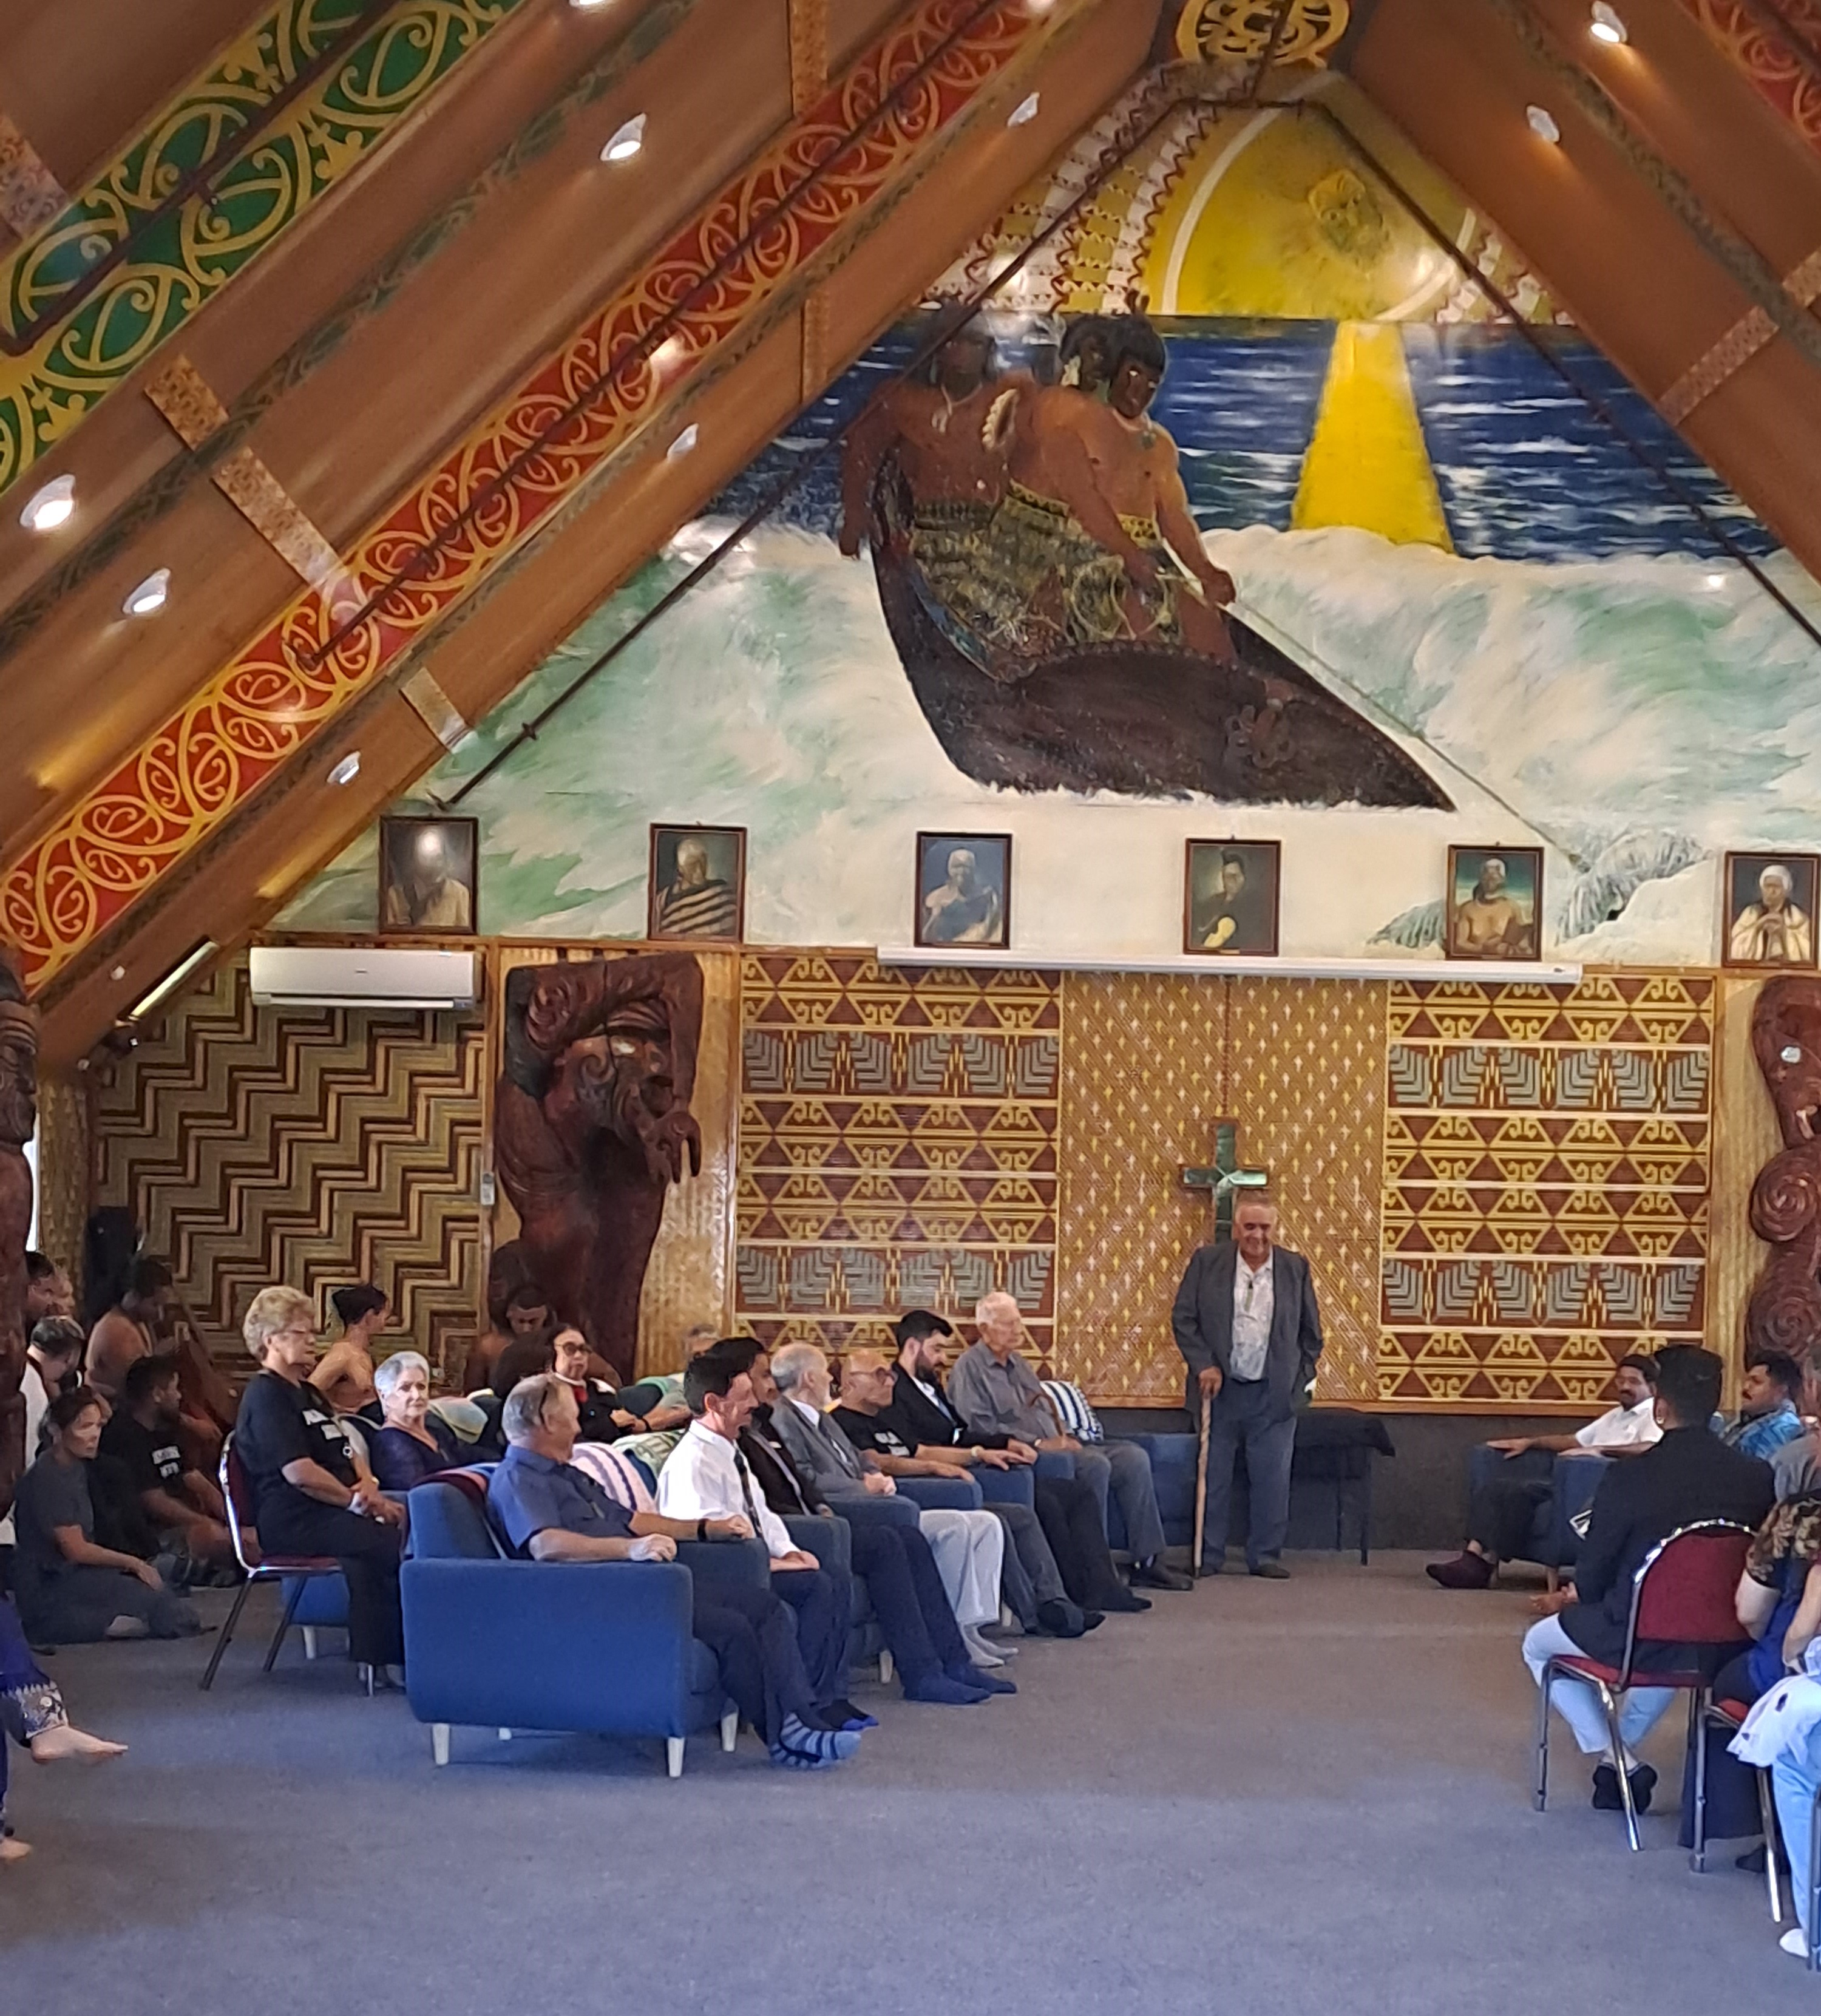 Ngāti Tamaoho kaumatua Ted Ngataki welcomes guests to the wharenui.